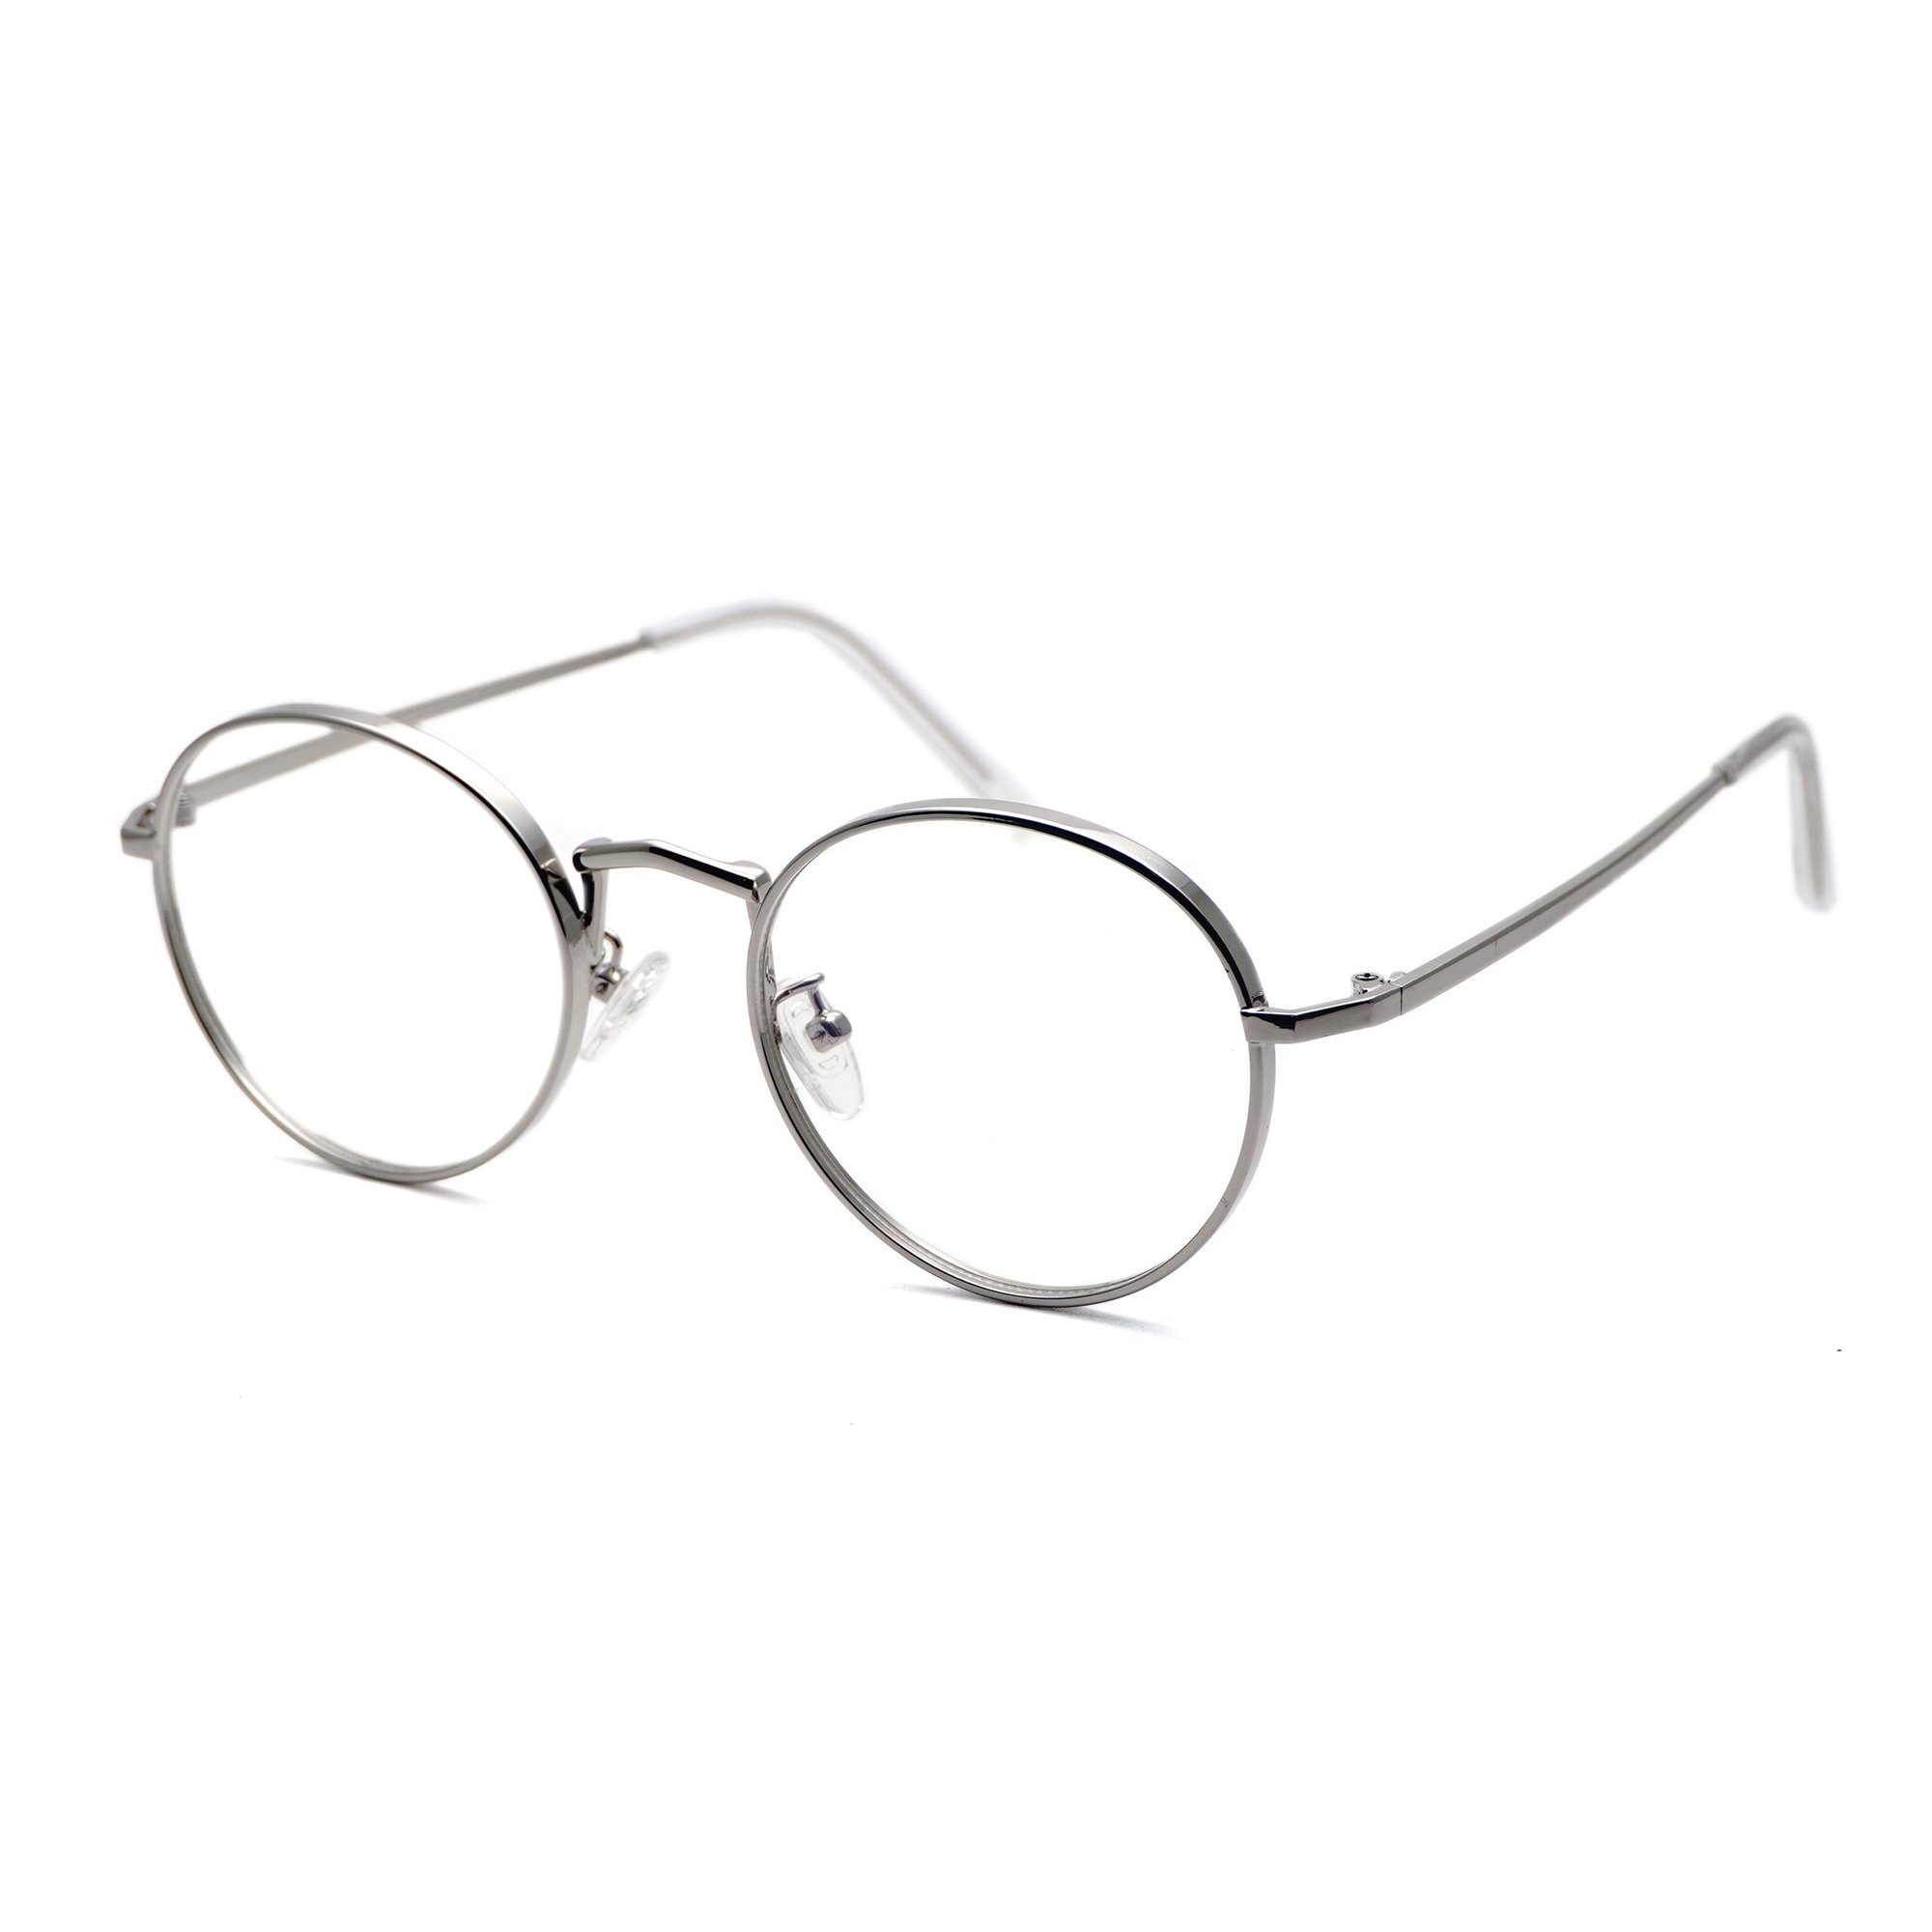 メタル ボストン1016型丸メガネ 伊達メガネ すべて ダテメガネ 限定の通販サイト 代官山眼鏡工房